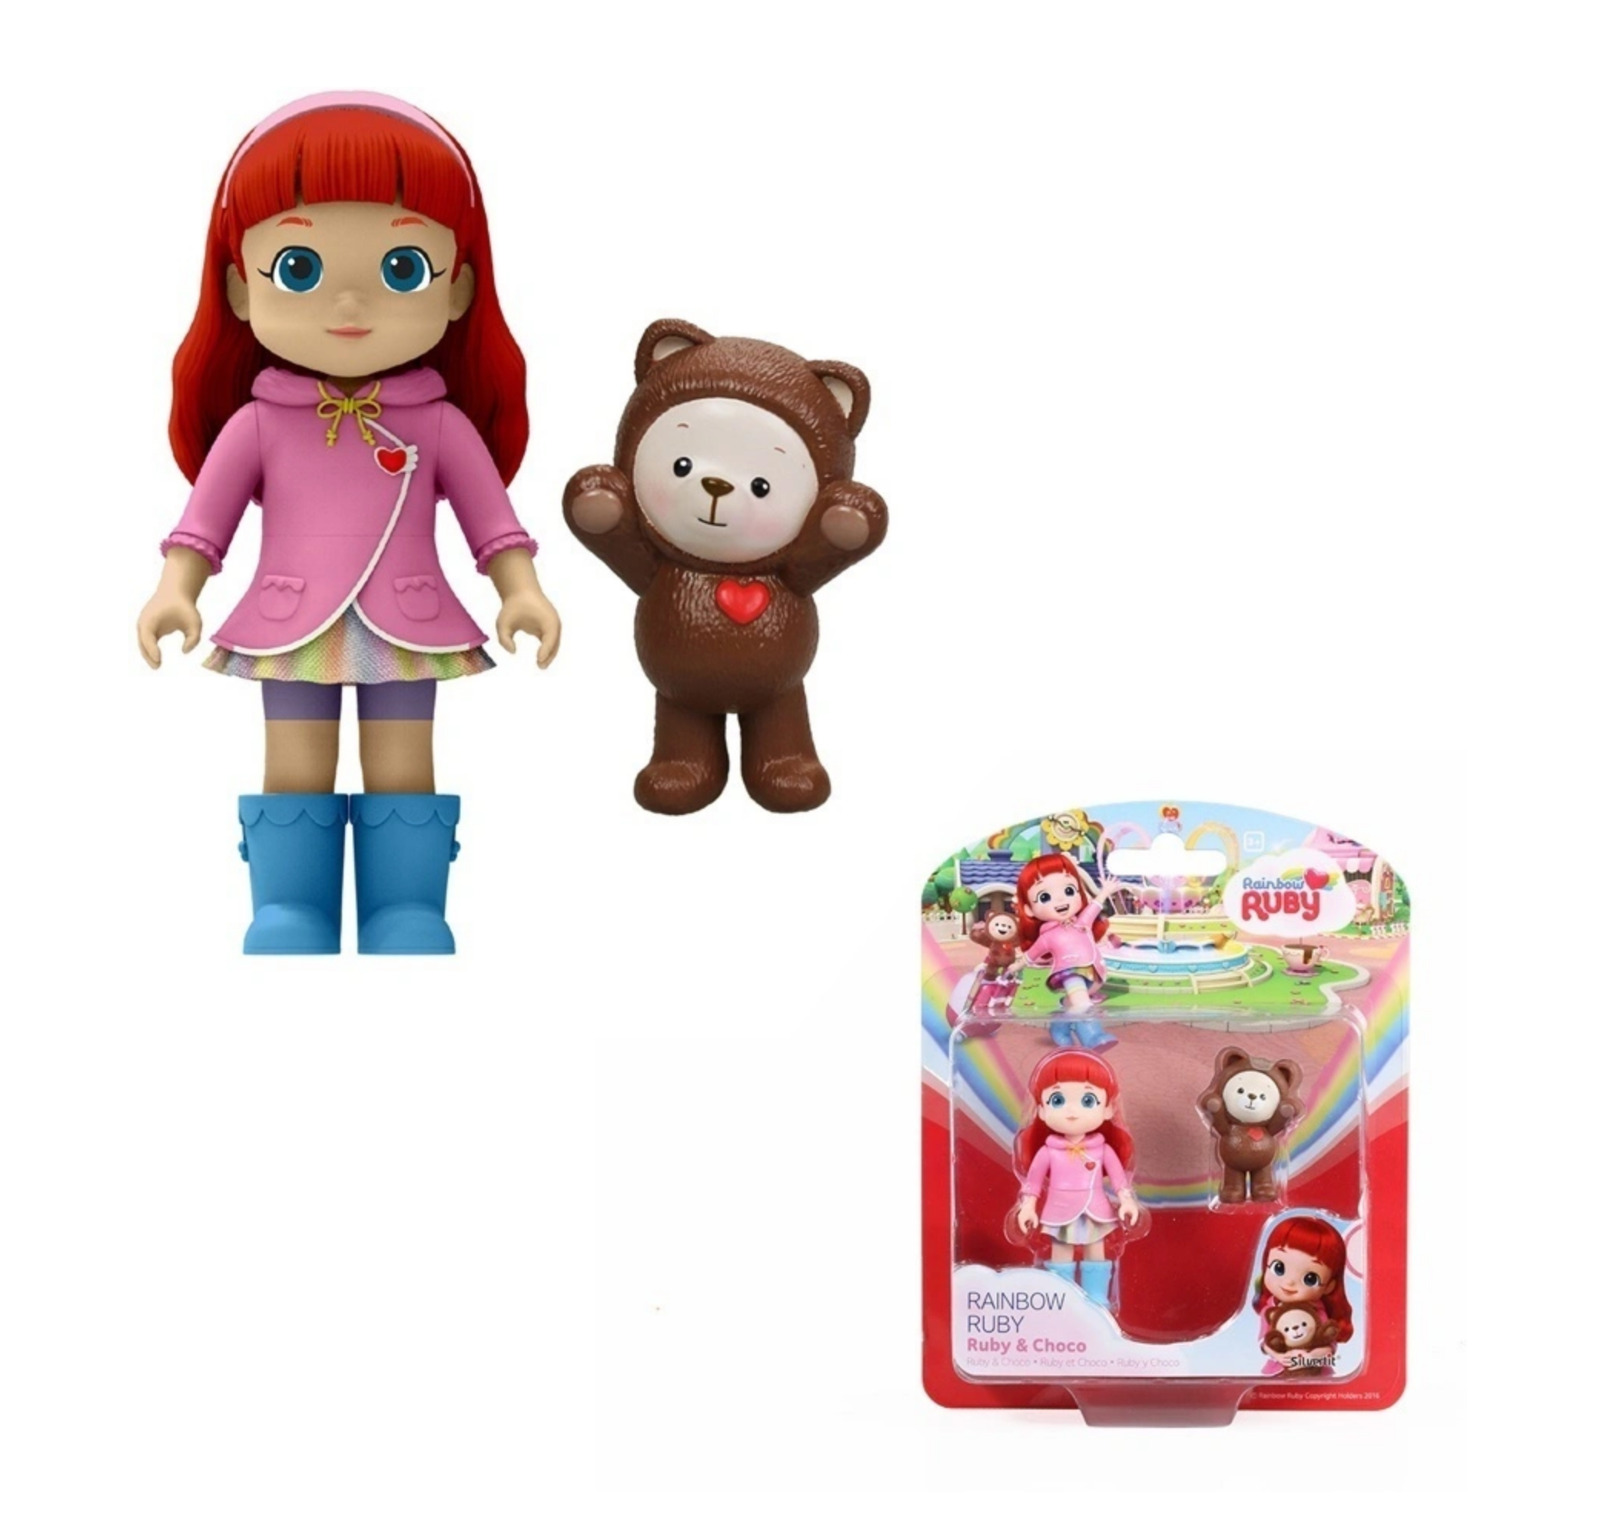 Rainbow Ruby Doll Ruby & Choco Toy Action Figurine Silverlit 89022